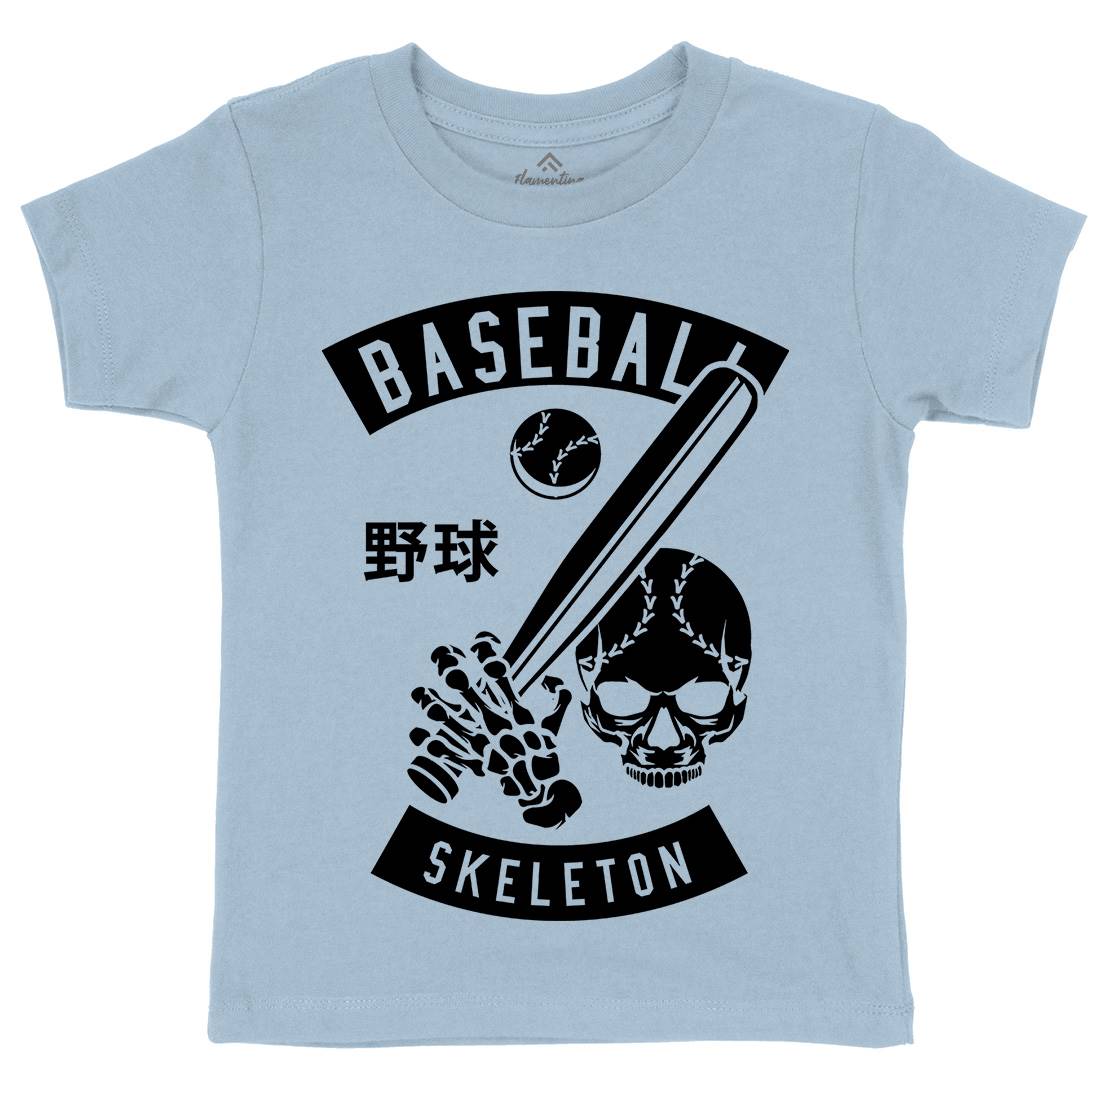 Baseball Skeleton Kids Crew Neck T-Shirt Sport B489